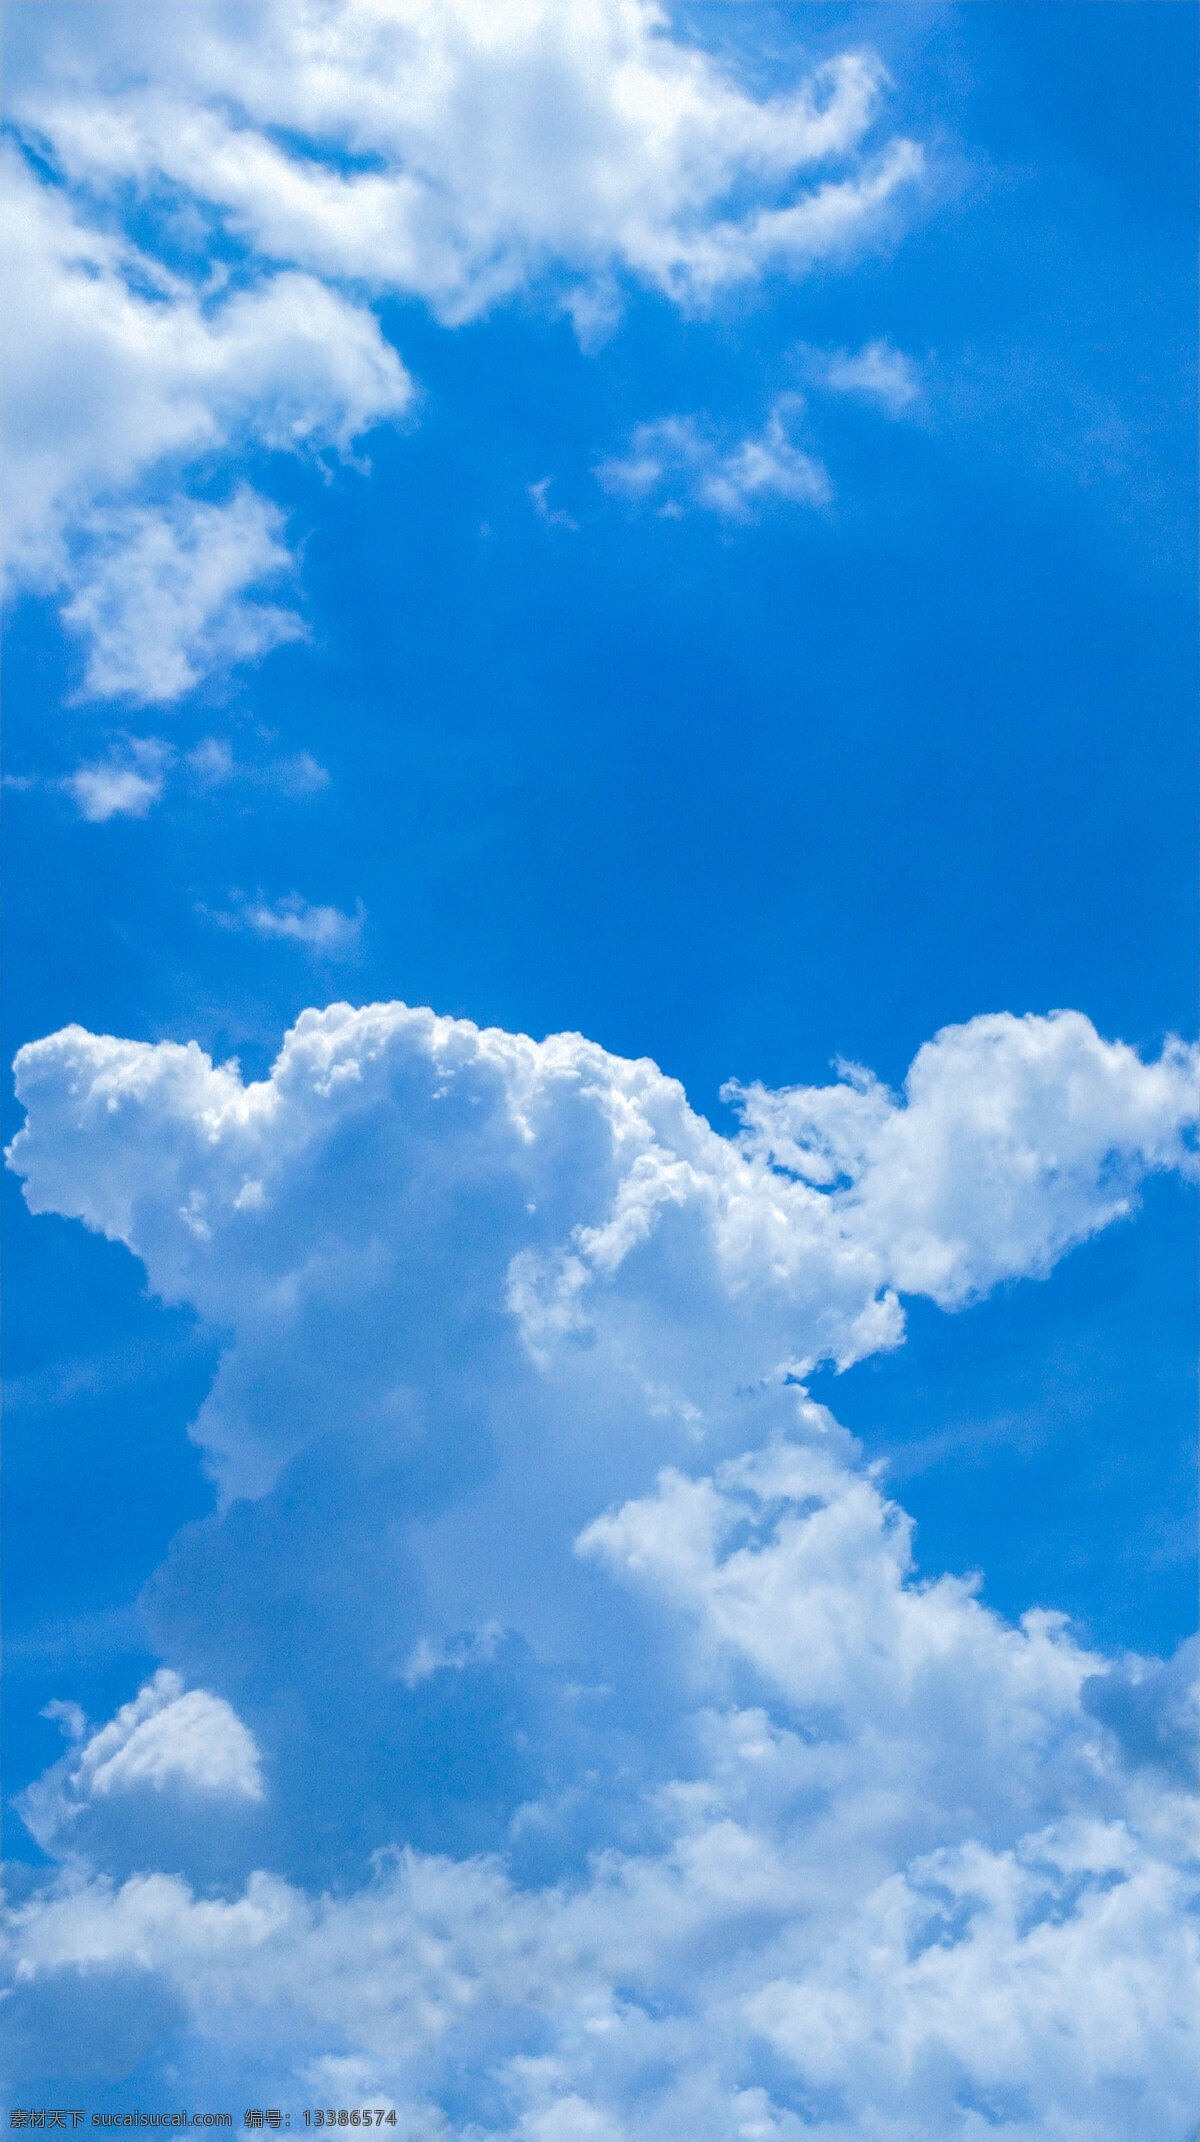 天空白云 夏日 天空 天空素材 蓝天 云 云朵 蓝天白云 风景 背景素材 祥云 城市 水 阳光 自然景观 自然风景